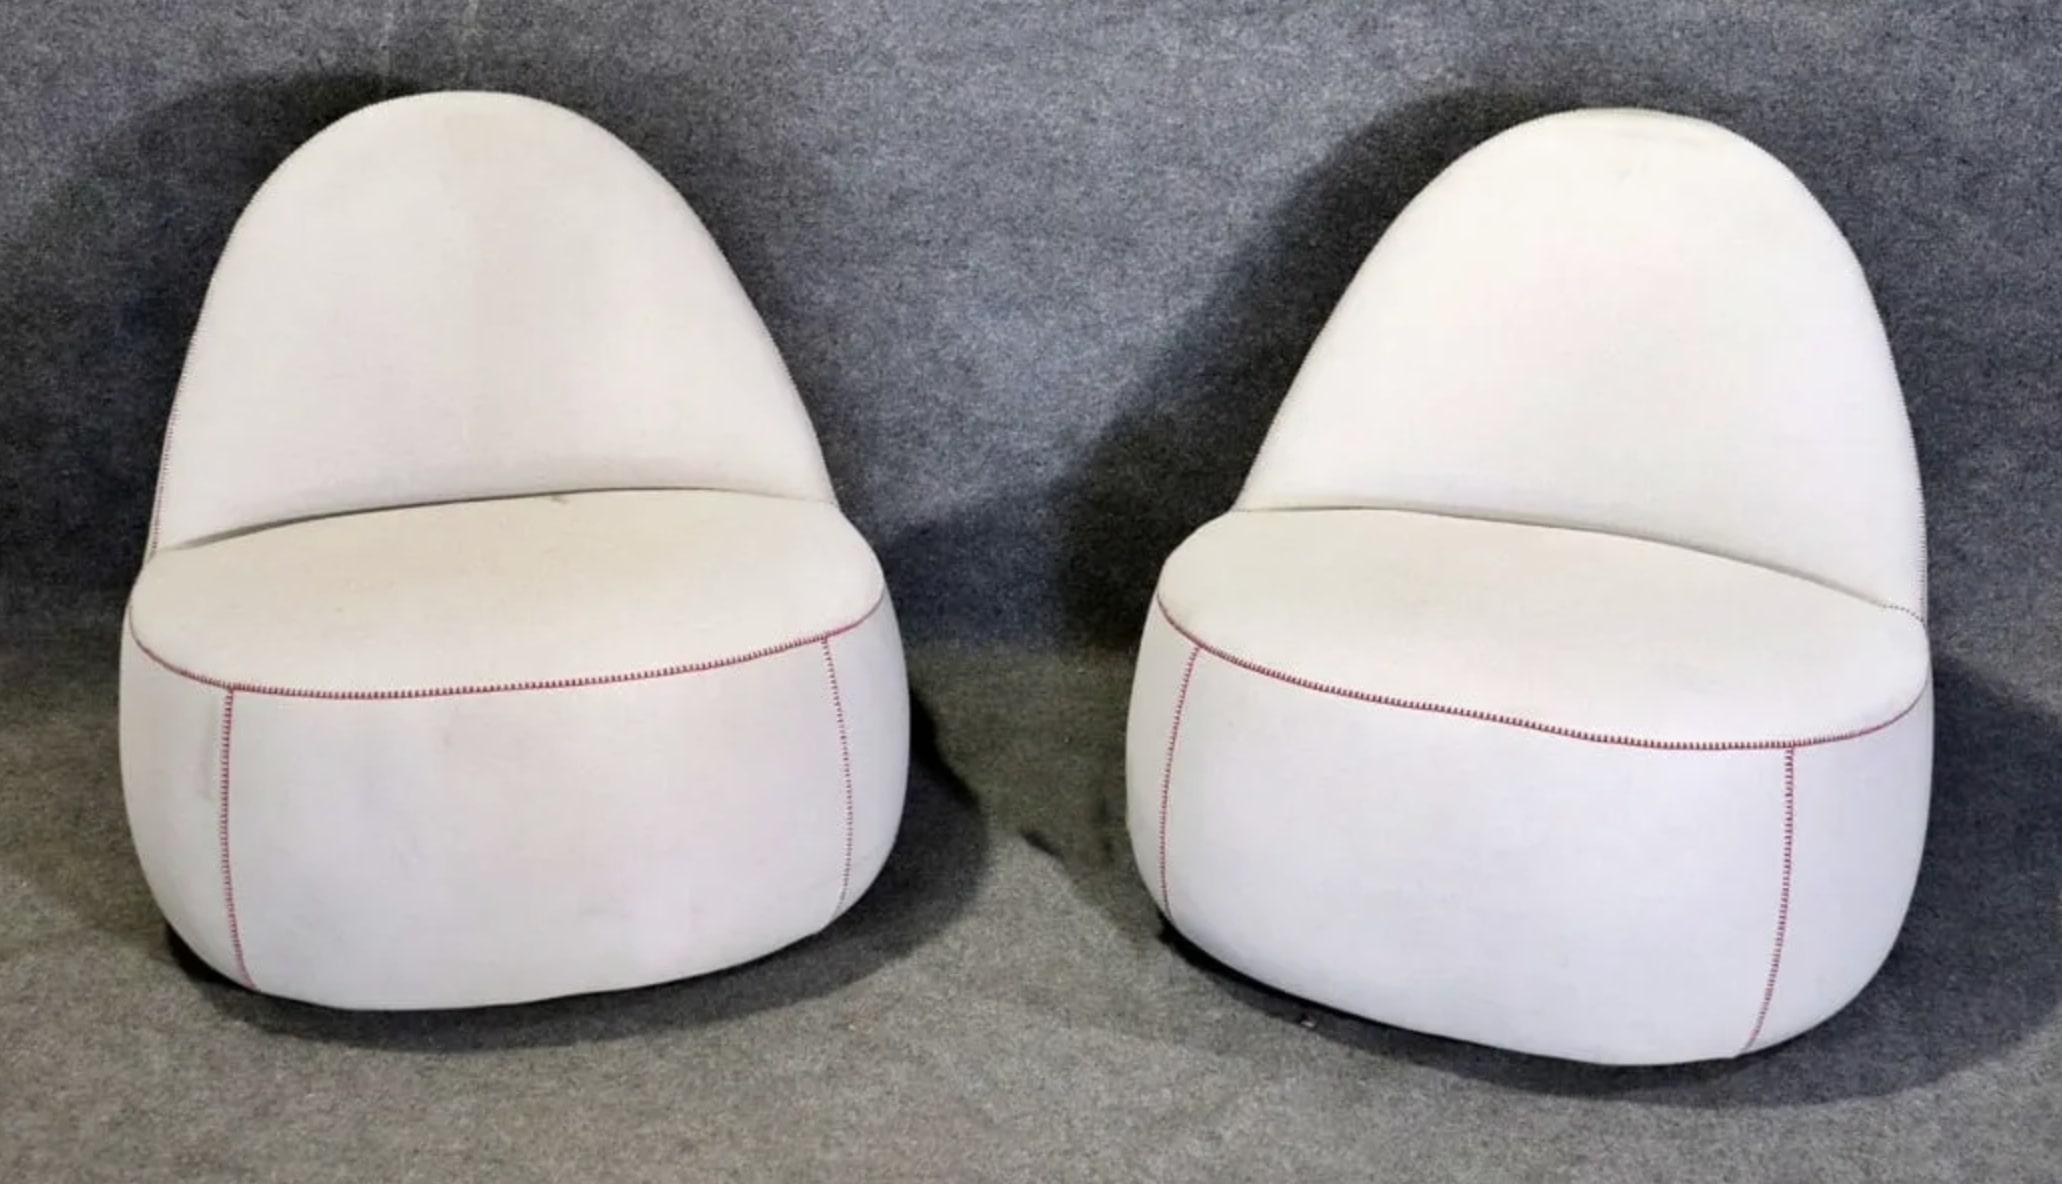 Einzigartig gestaltete Loungesessel von Bernhardt Design. Er wird Mitt-Stuhl genannt und hat die Form eines Fäustlings. Schlichtes und modernes Design für Ihr Zuhause.
Bitte bestätigen Sie den Standort NY oder NJ